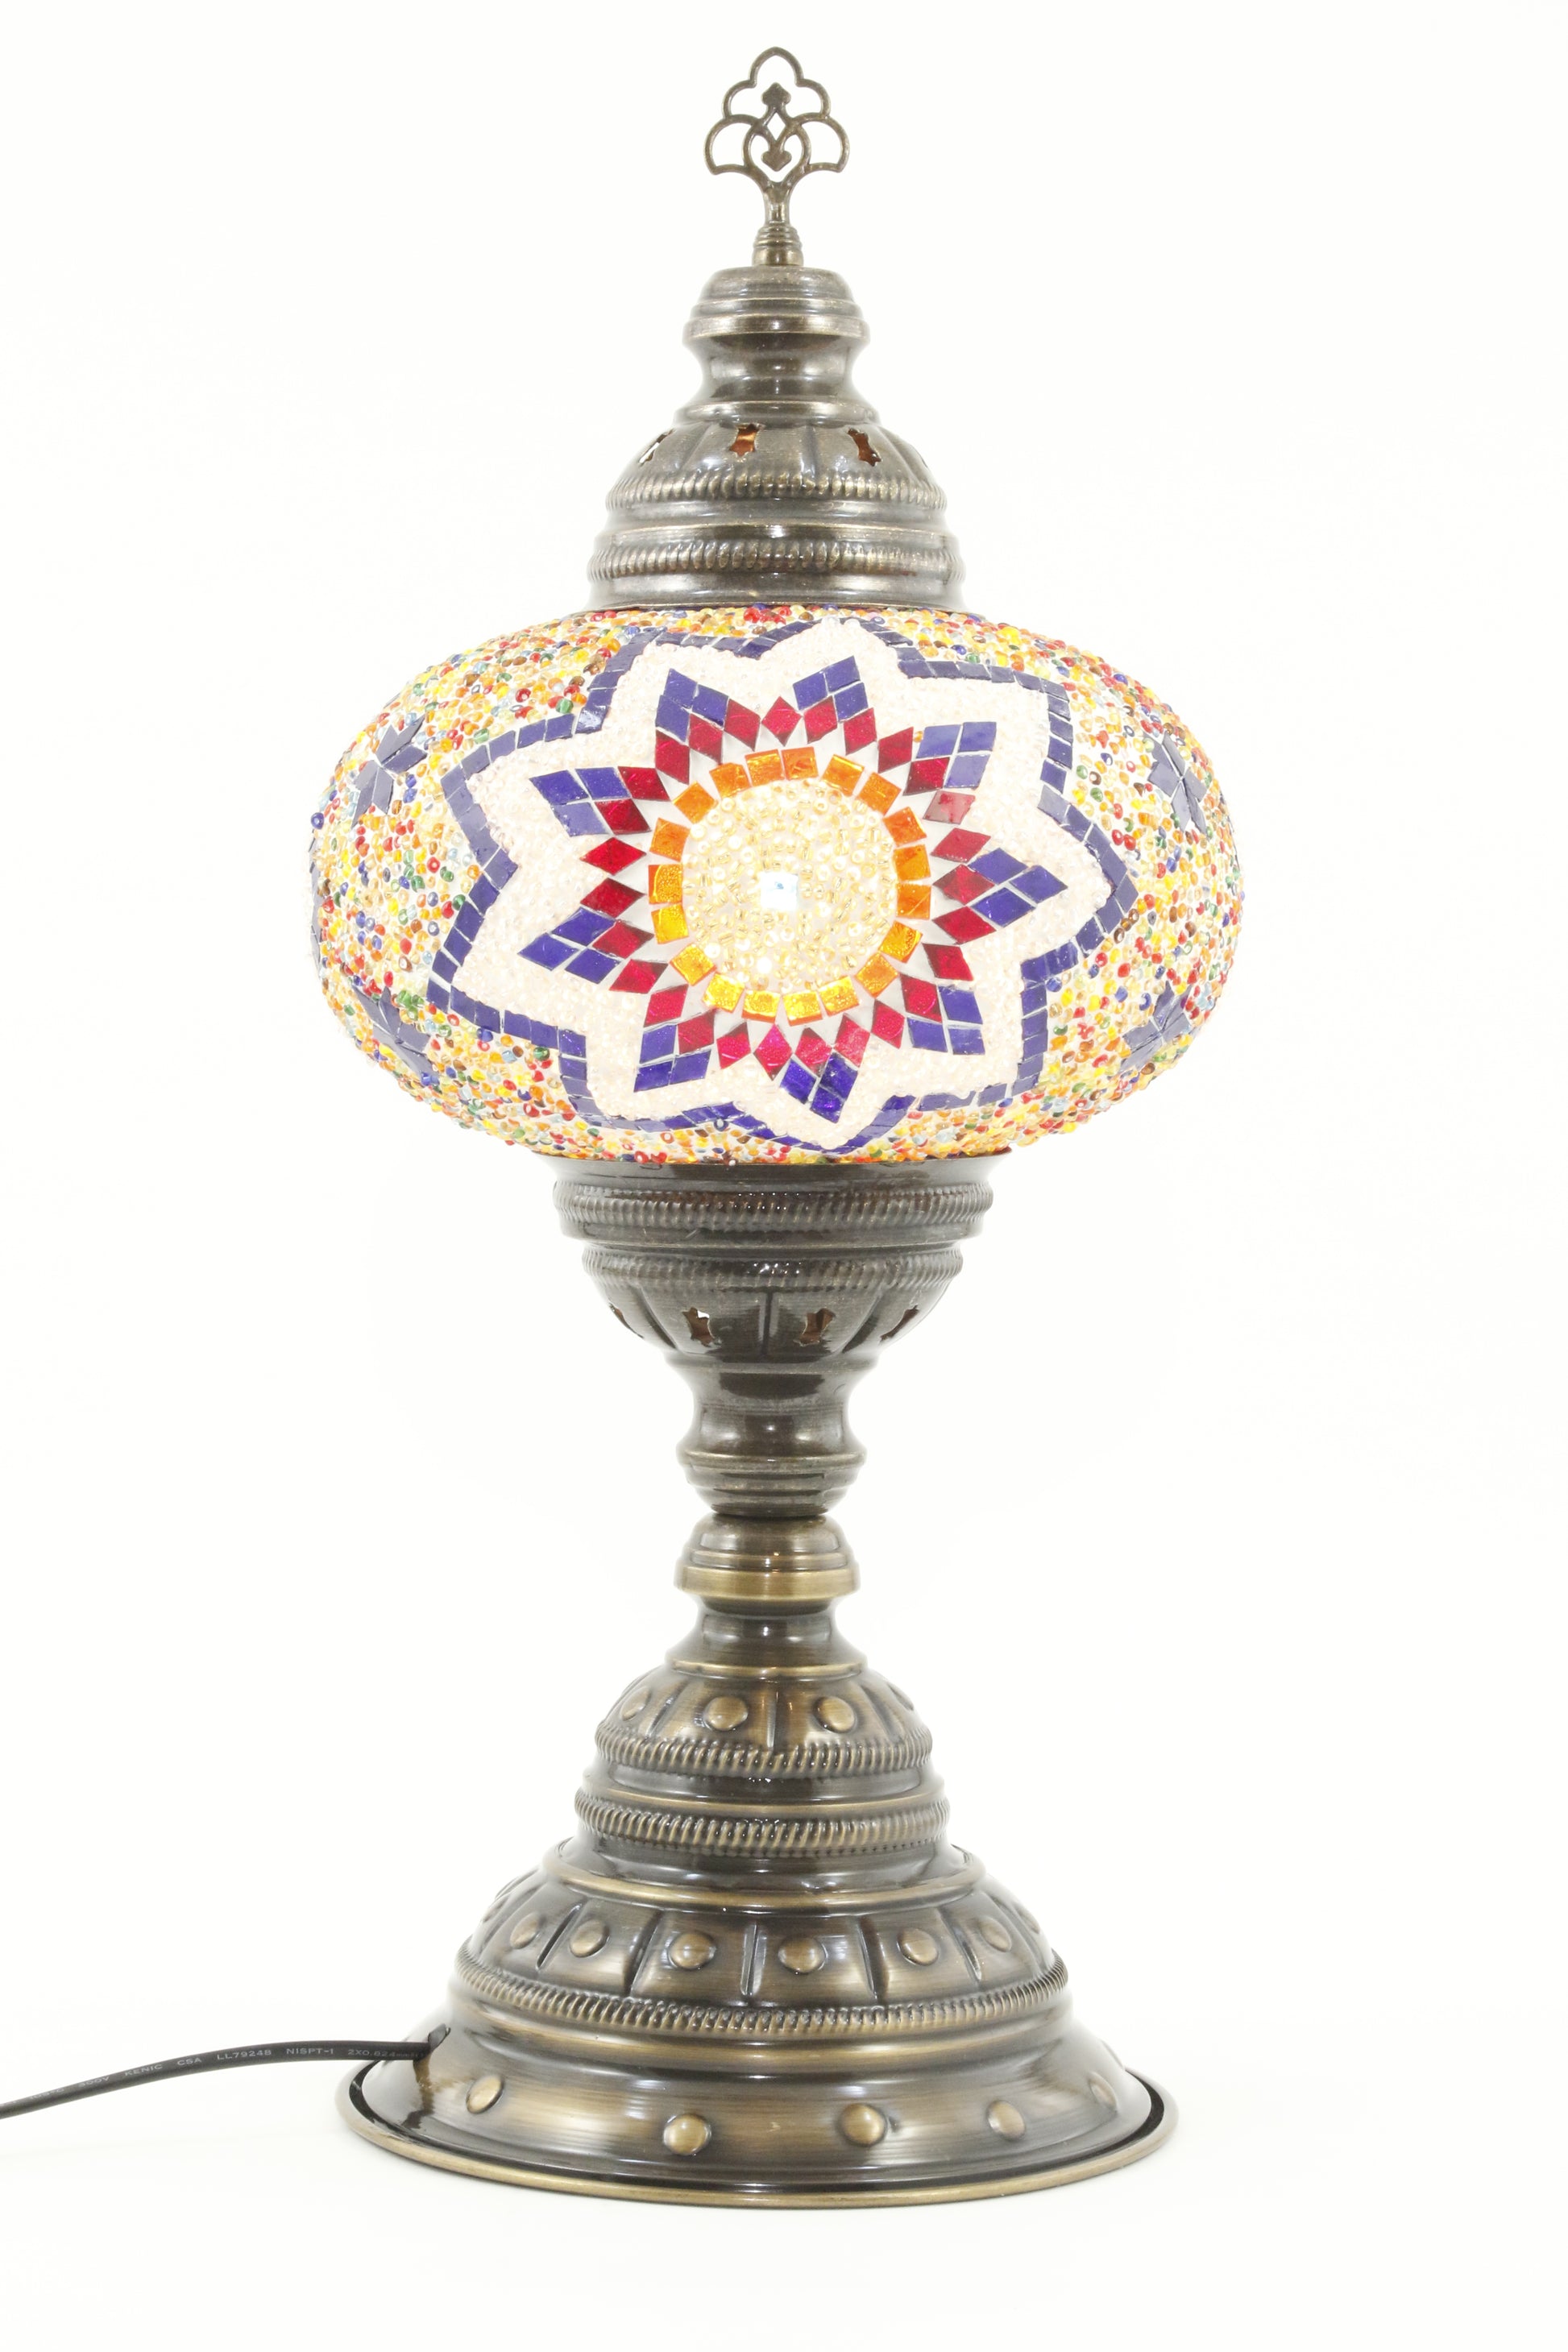 TURKISH MOSAIC TABLE LAMP MB4 RAINBOW 2-TURNED ON